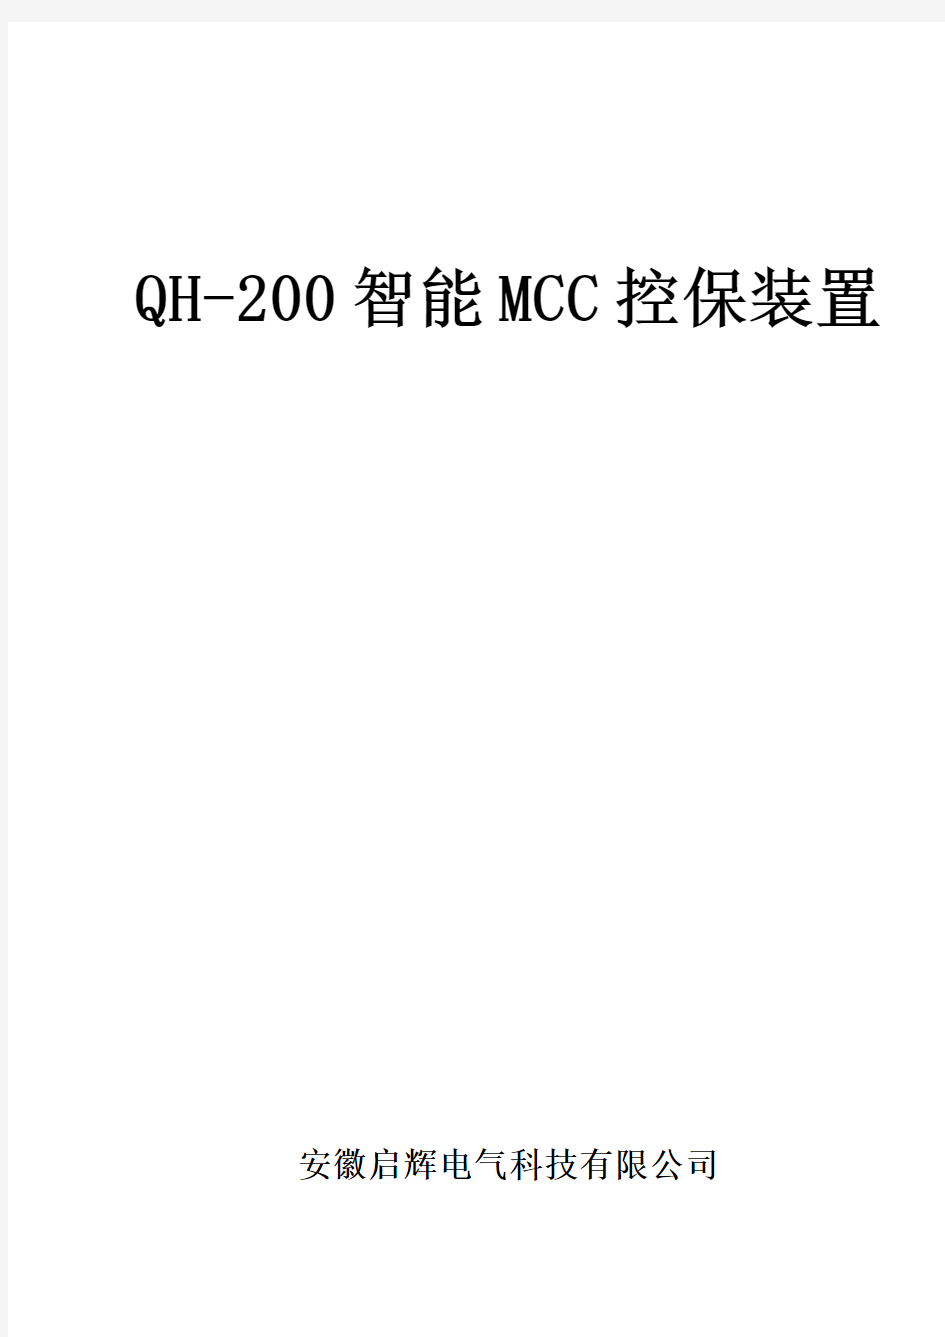 QH-200-智能MCC控保装置技术说明书